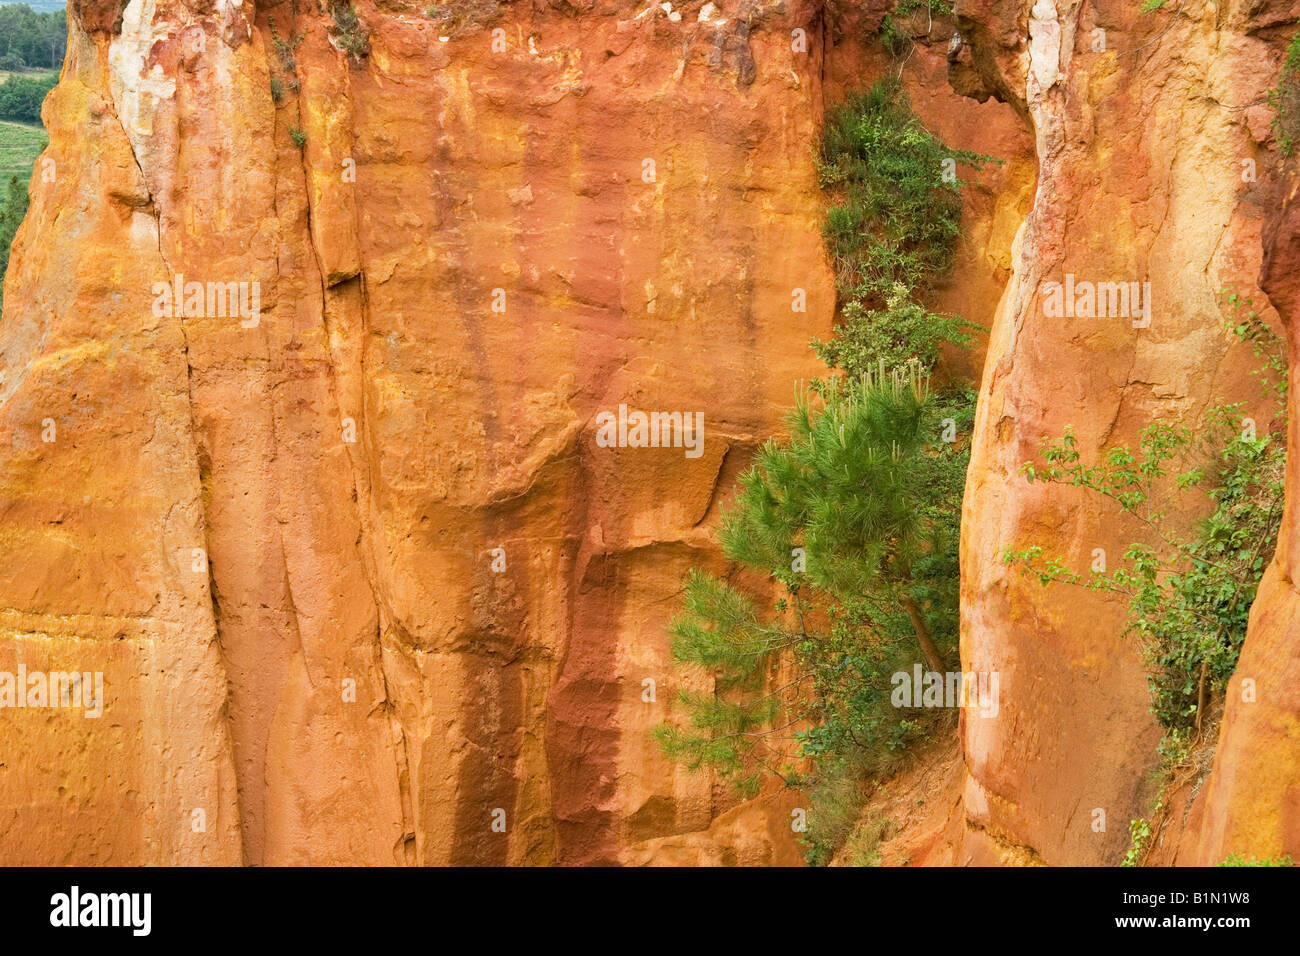 Ockerfarbenen Felsen bei Roussillon in der Luberon Gegend Frankreichs, wo rohe Pigment für Künstler Farben vor Kunststoffe abgebaut wurde. Stockfoto